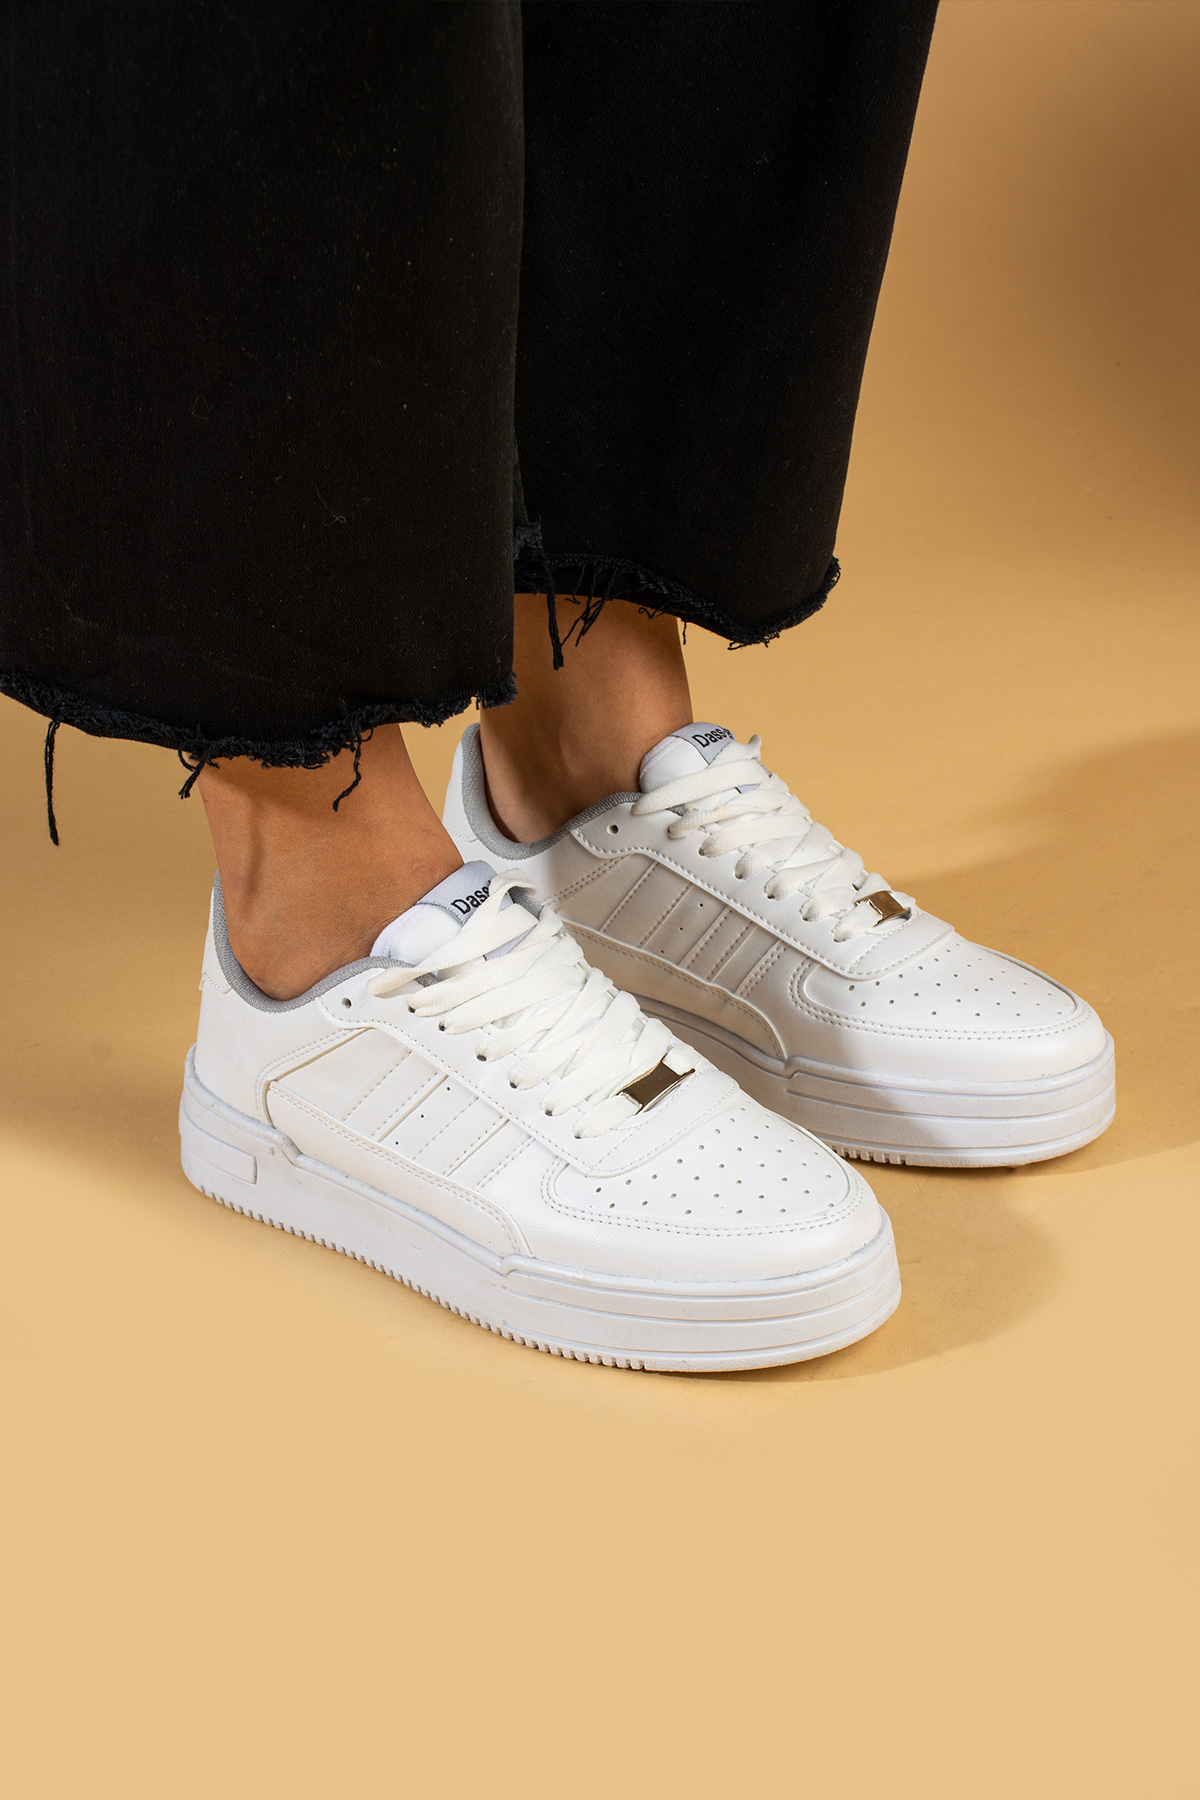 Pembe Potin Bağcıklı Comfort Taban Şeritli Kadın Sneaker 001-1005-24 - Beyaz